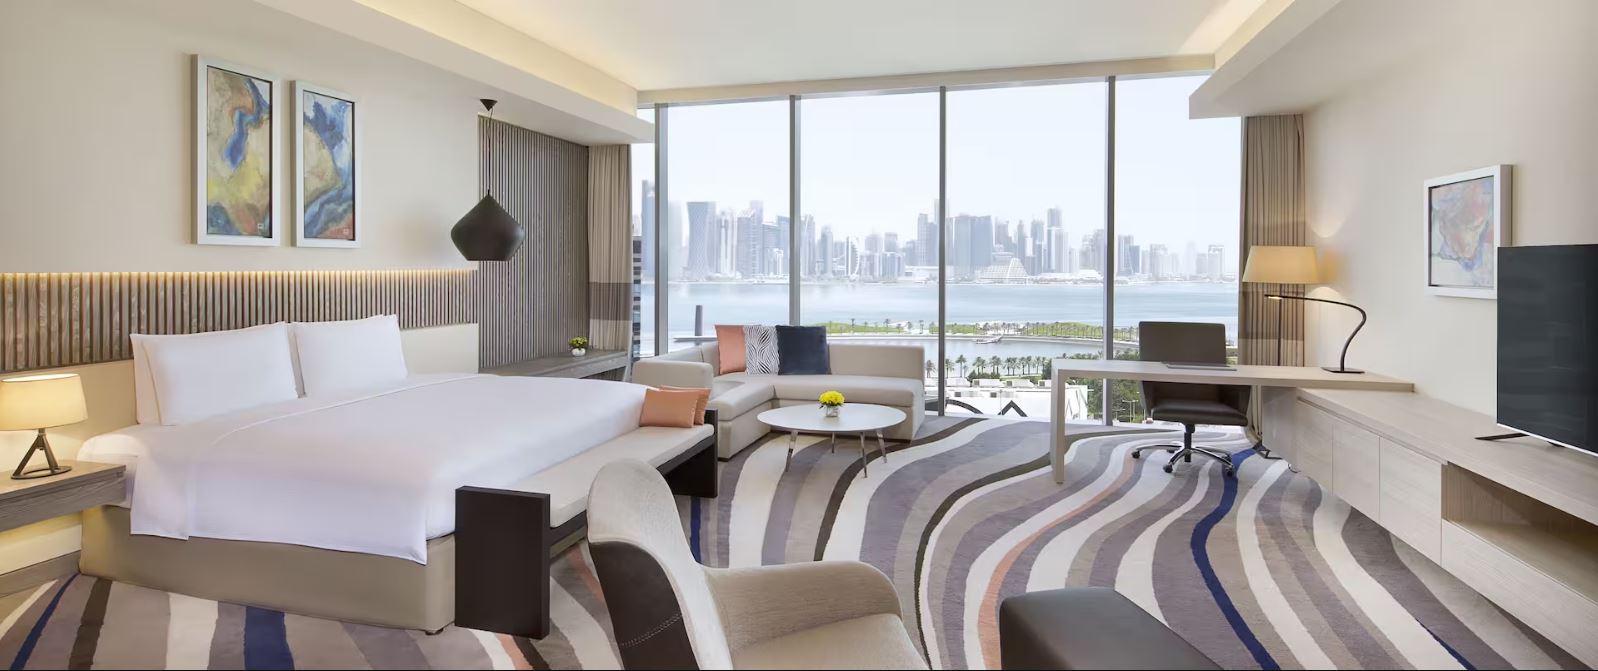 فنادق السد الدوحة